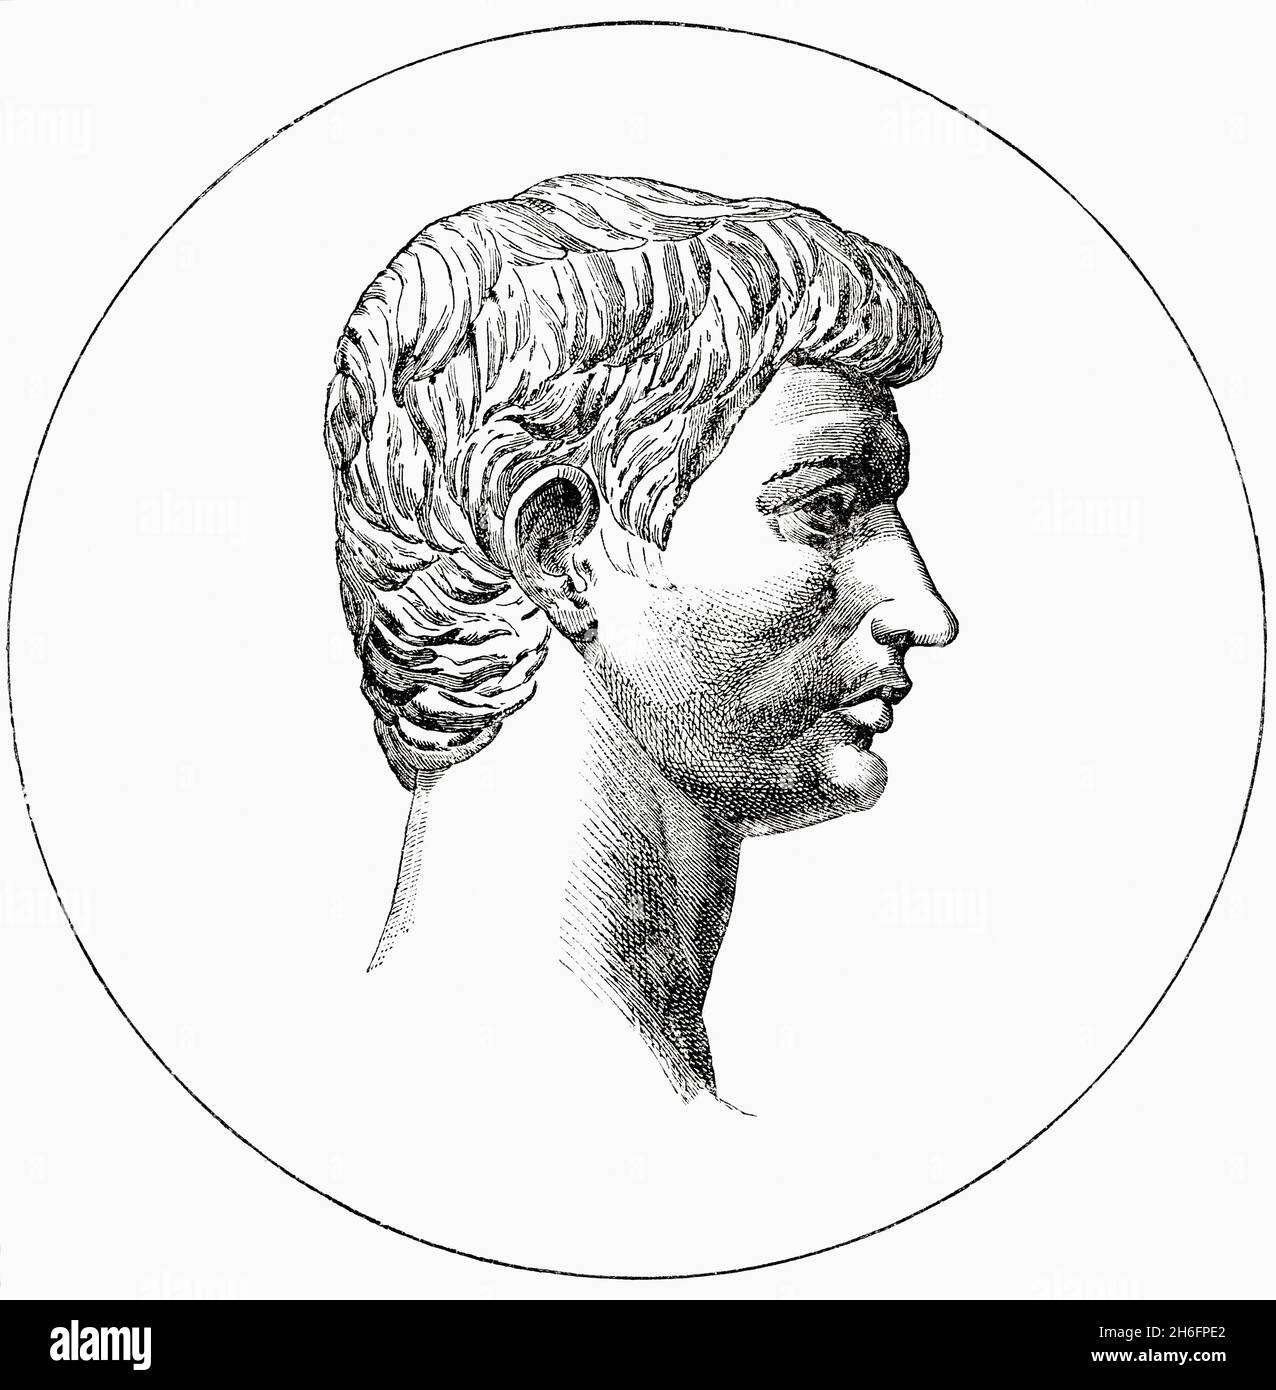 brutus julius caesar drawing